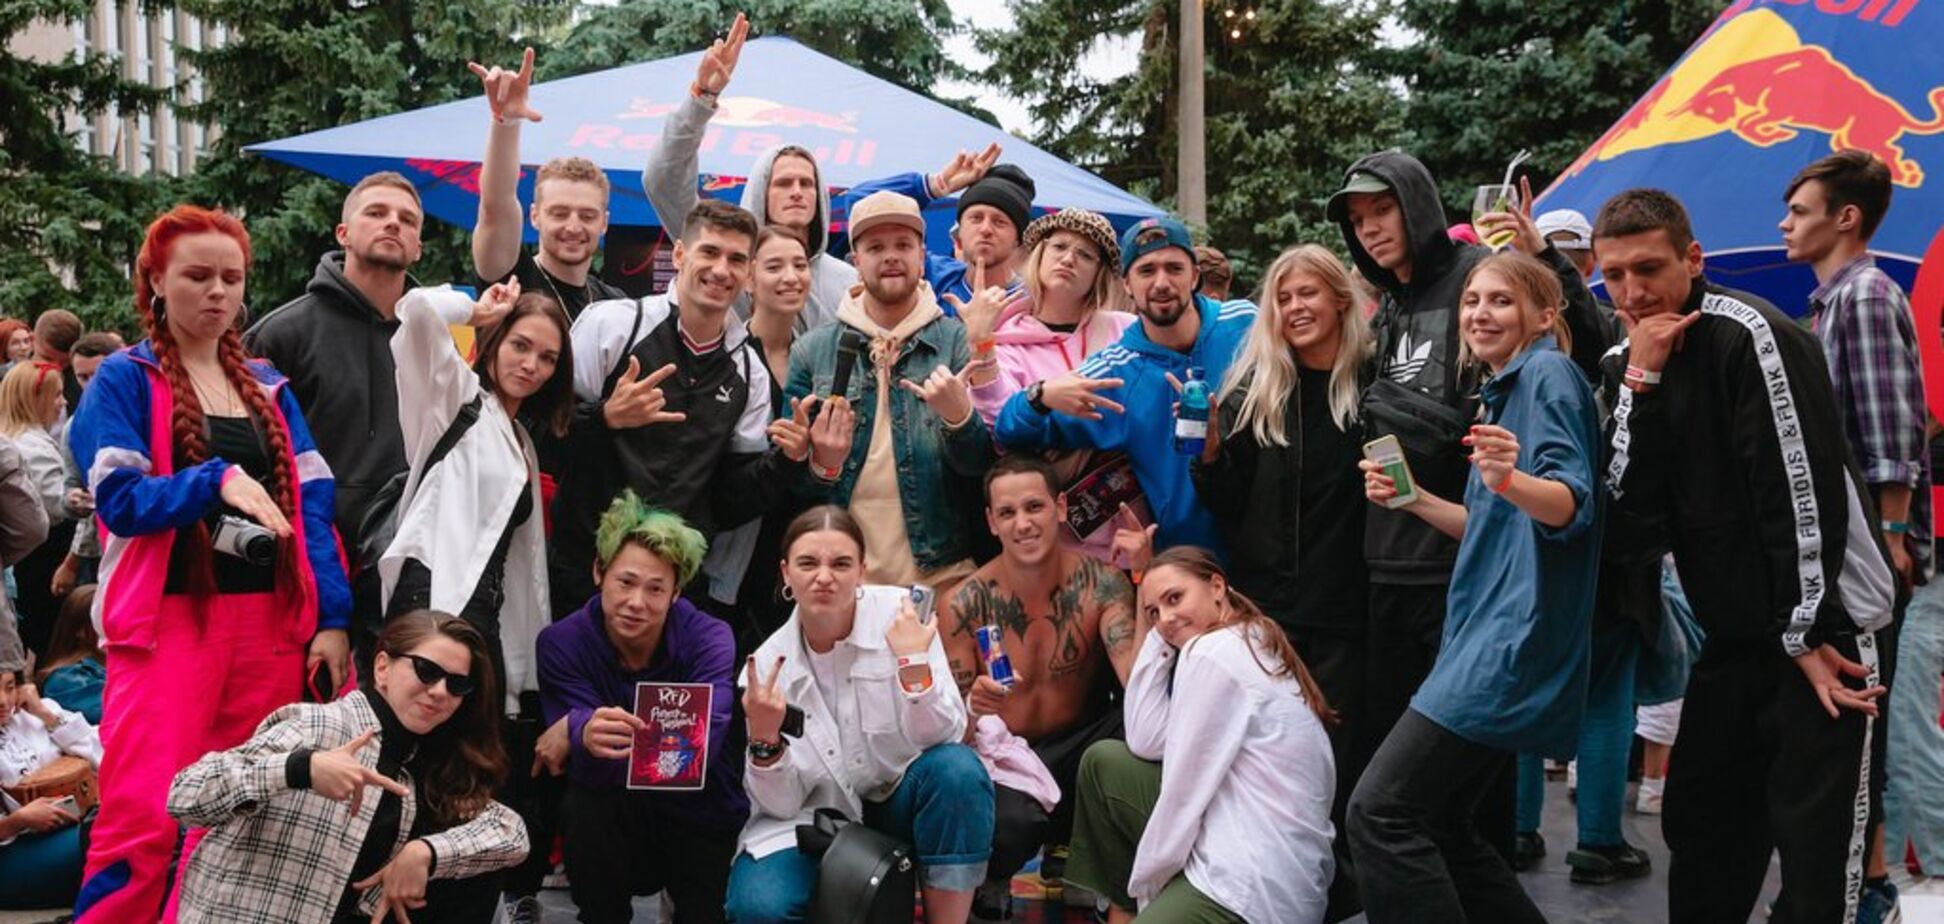 У Києві та Одесі пройшли відбори Red Bull Dance Your Style